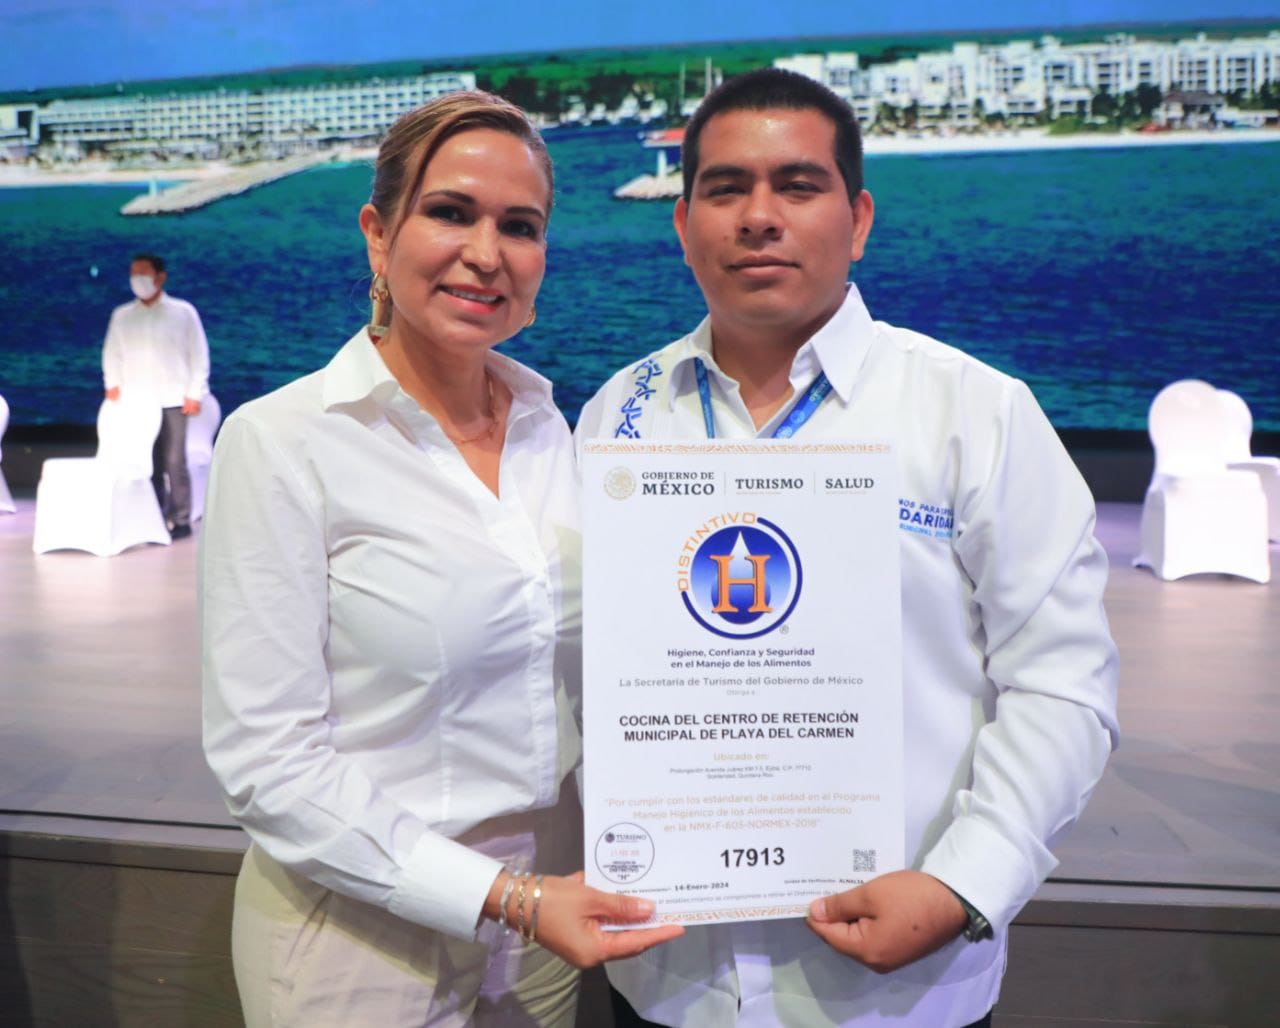 • Certifica la calidad de los alimentos para los internos y el compromiso de la presidenta Lili Campos para darles un trato digno y humano